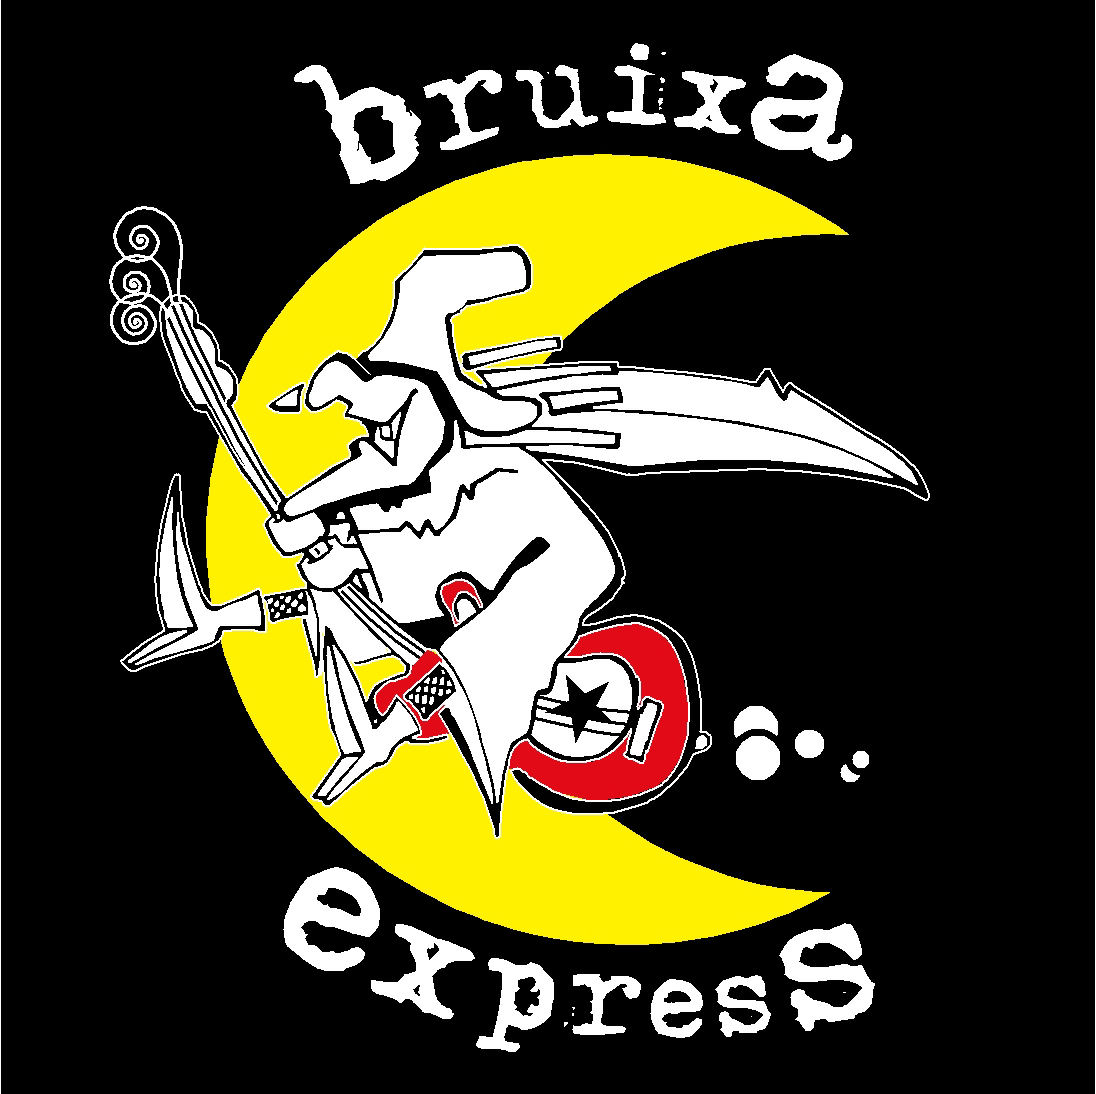 La Bruixa Express